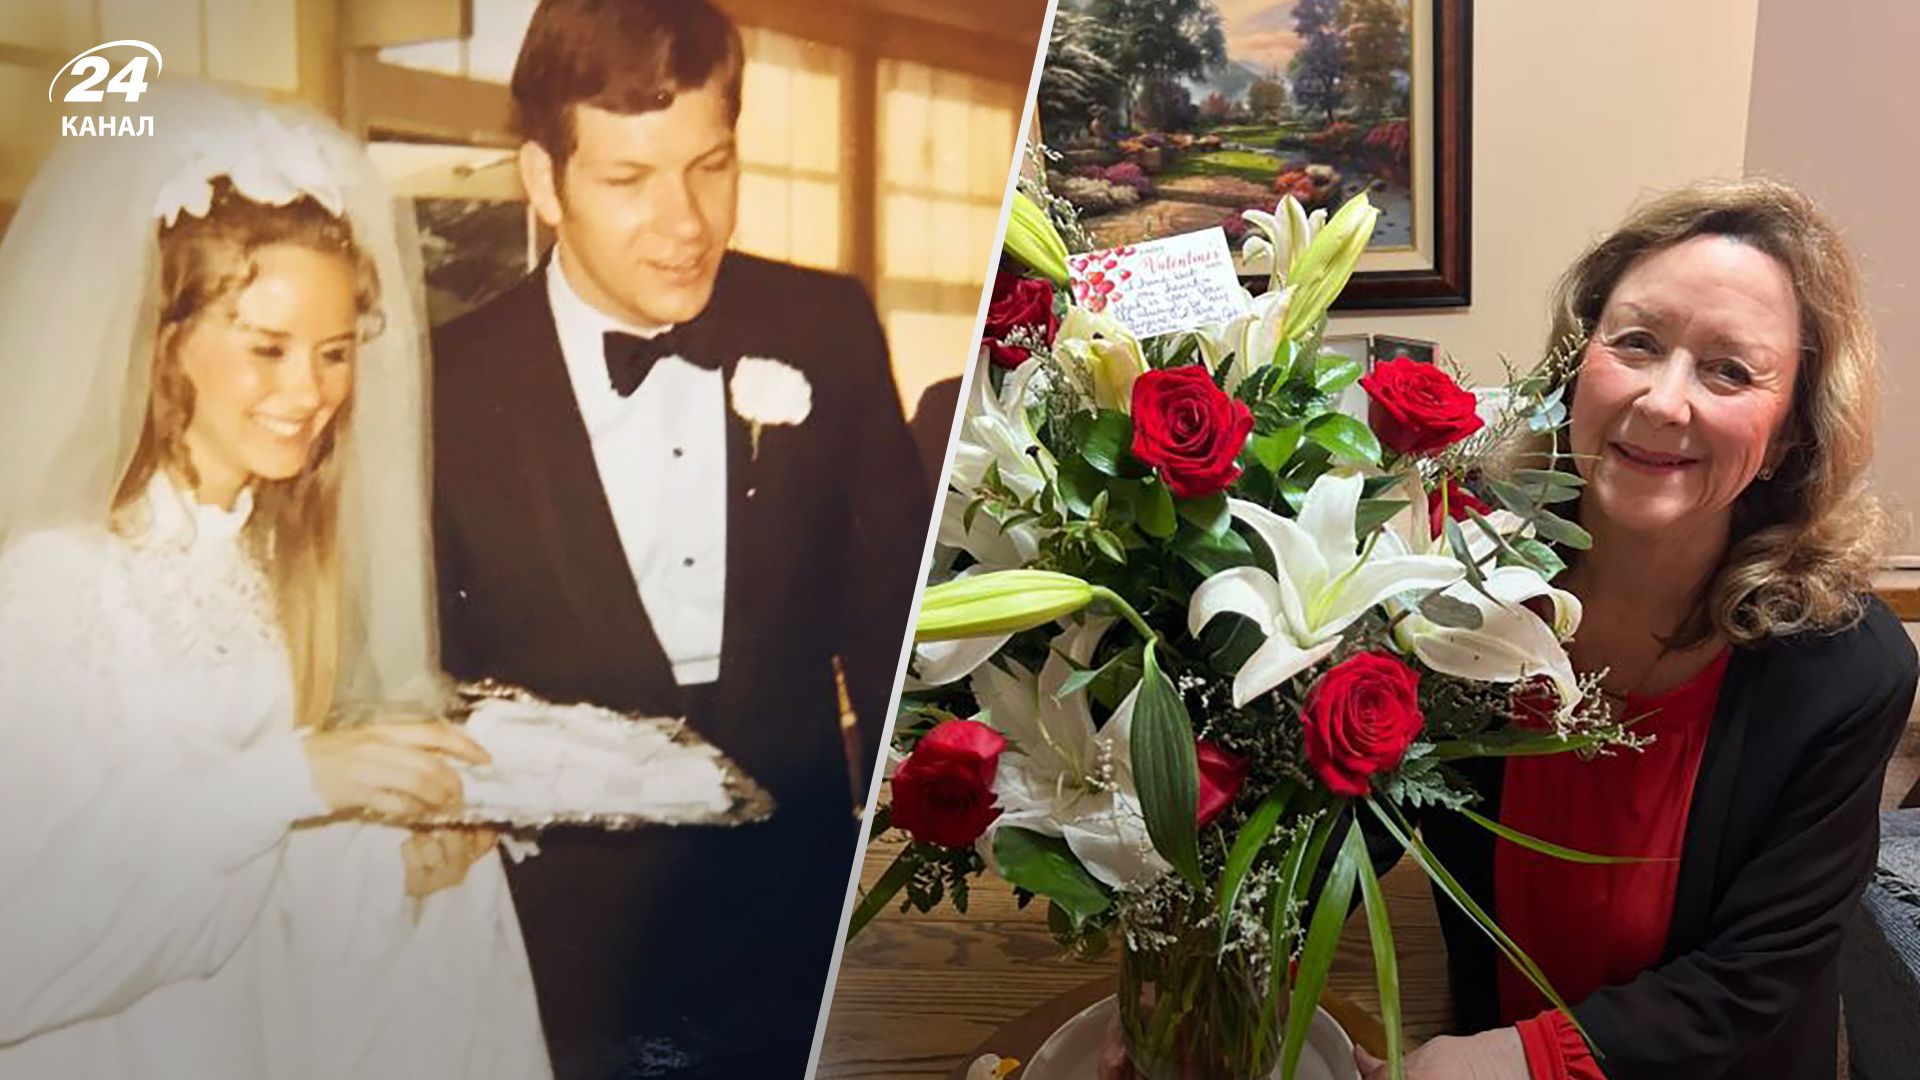 Джон Мейвер помер у 2017, а його дружині Діані досі доставляють квіти